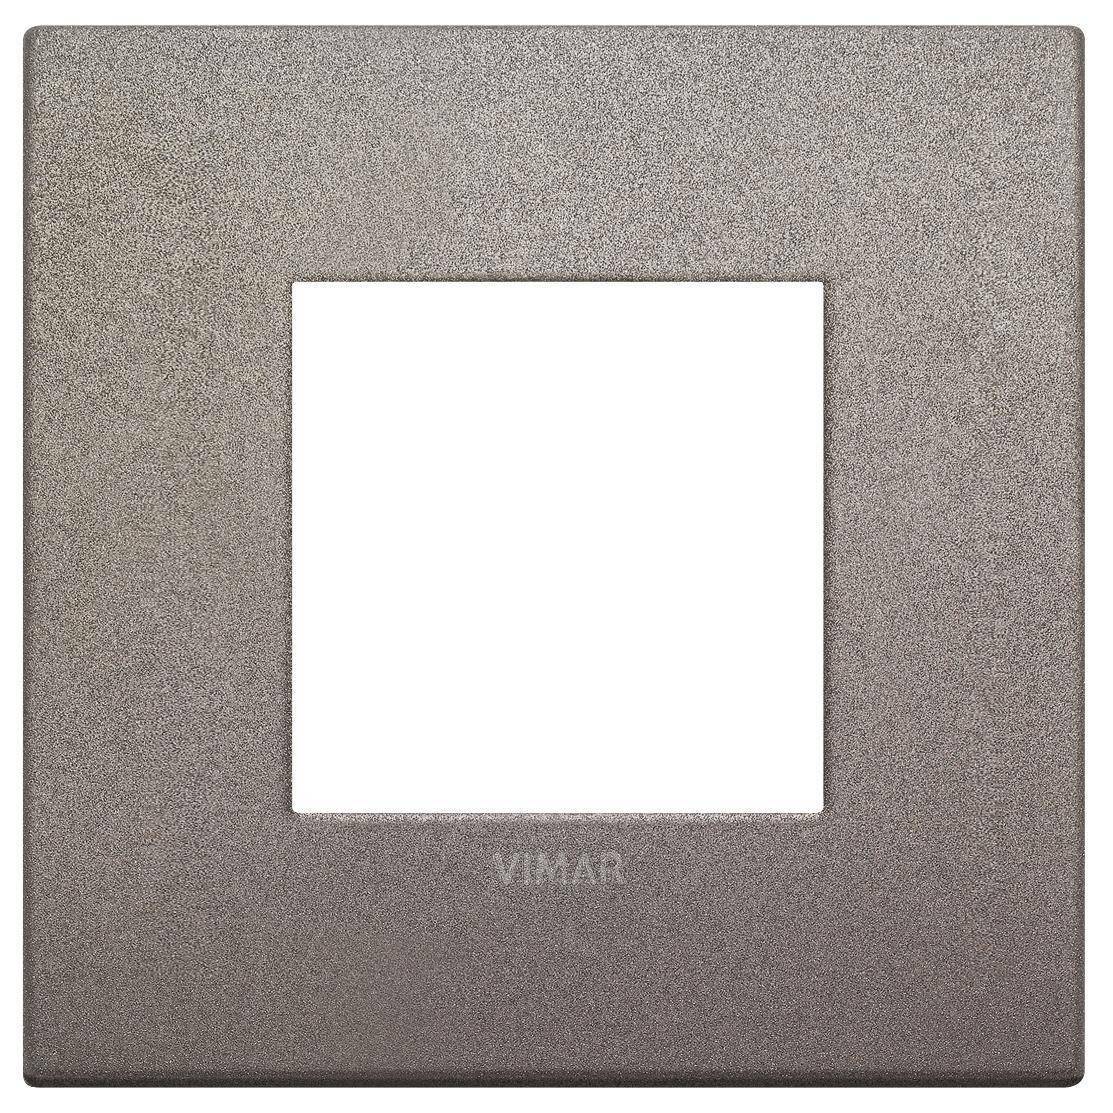 vimar vimar arke' placca classic 2m titanio matt 19642.04